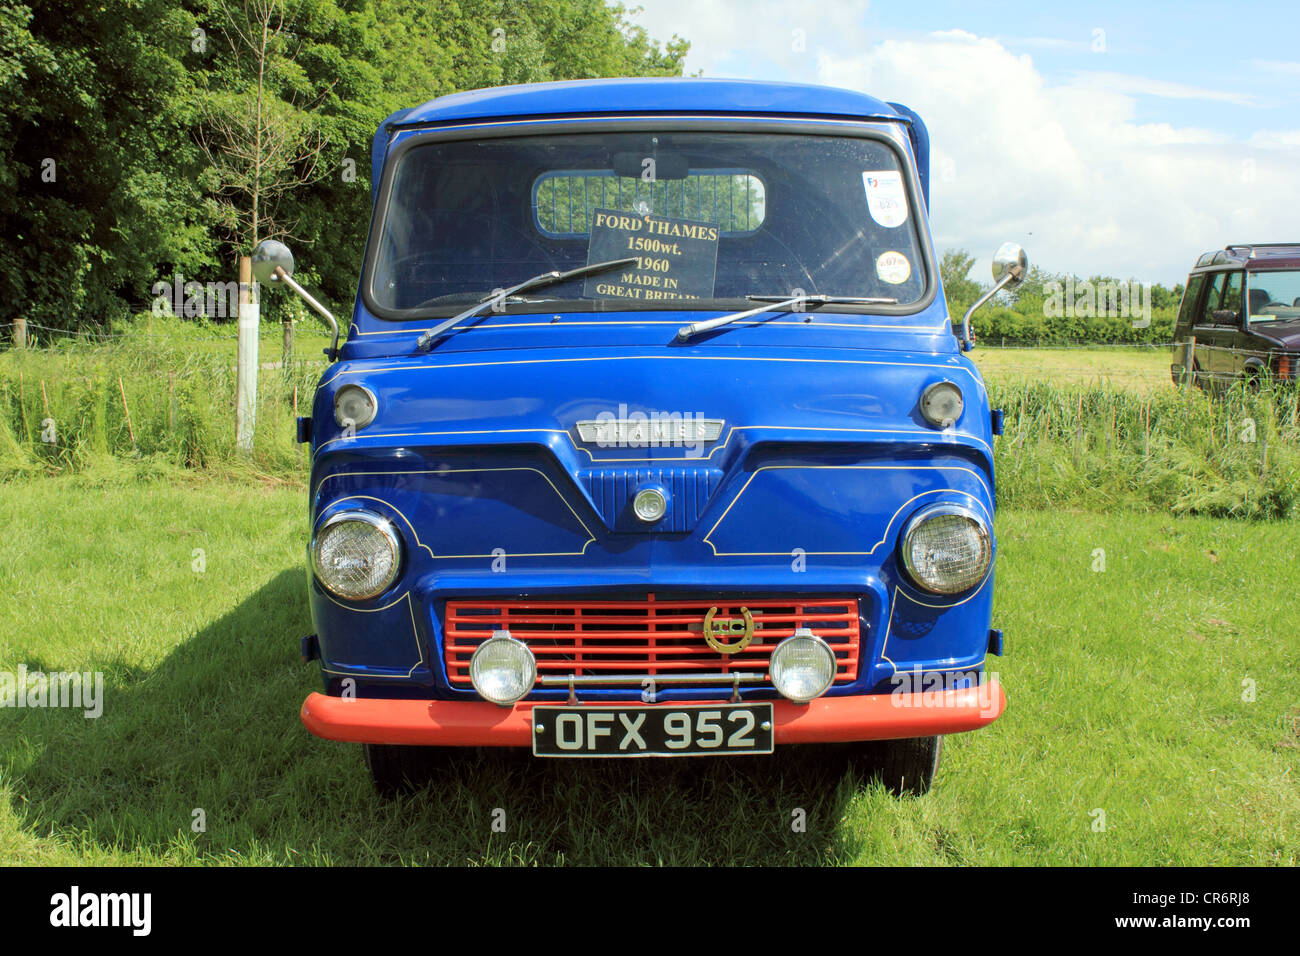 Ford Thames Van dans une livrée rouge et bleu classique Banque D'Images